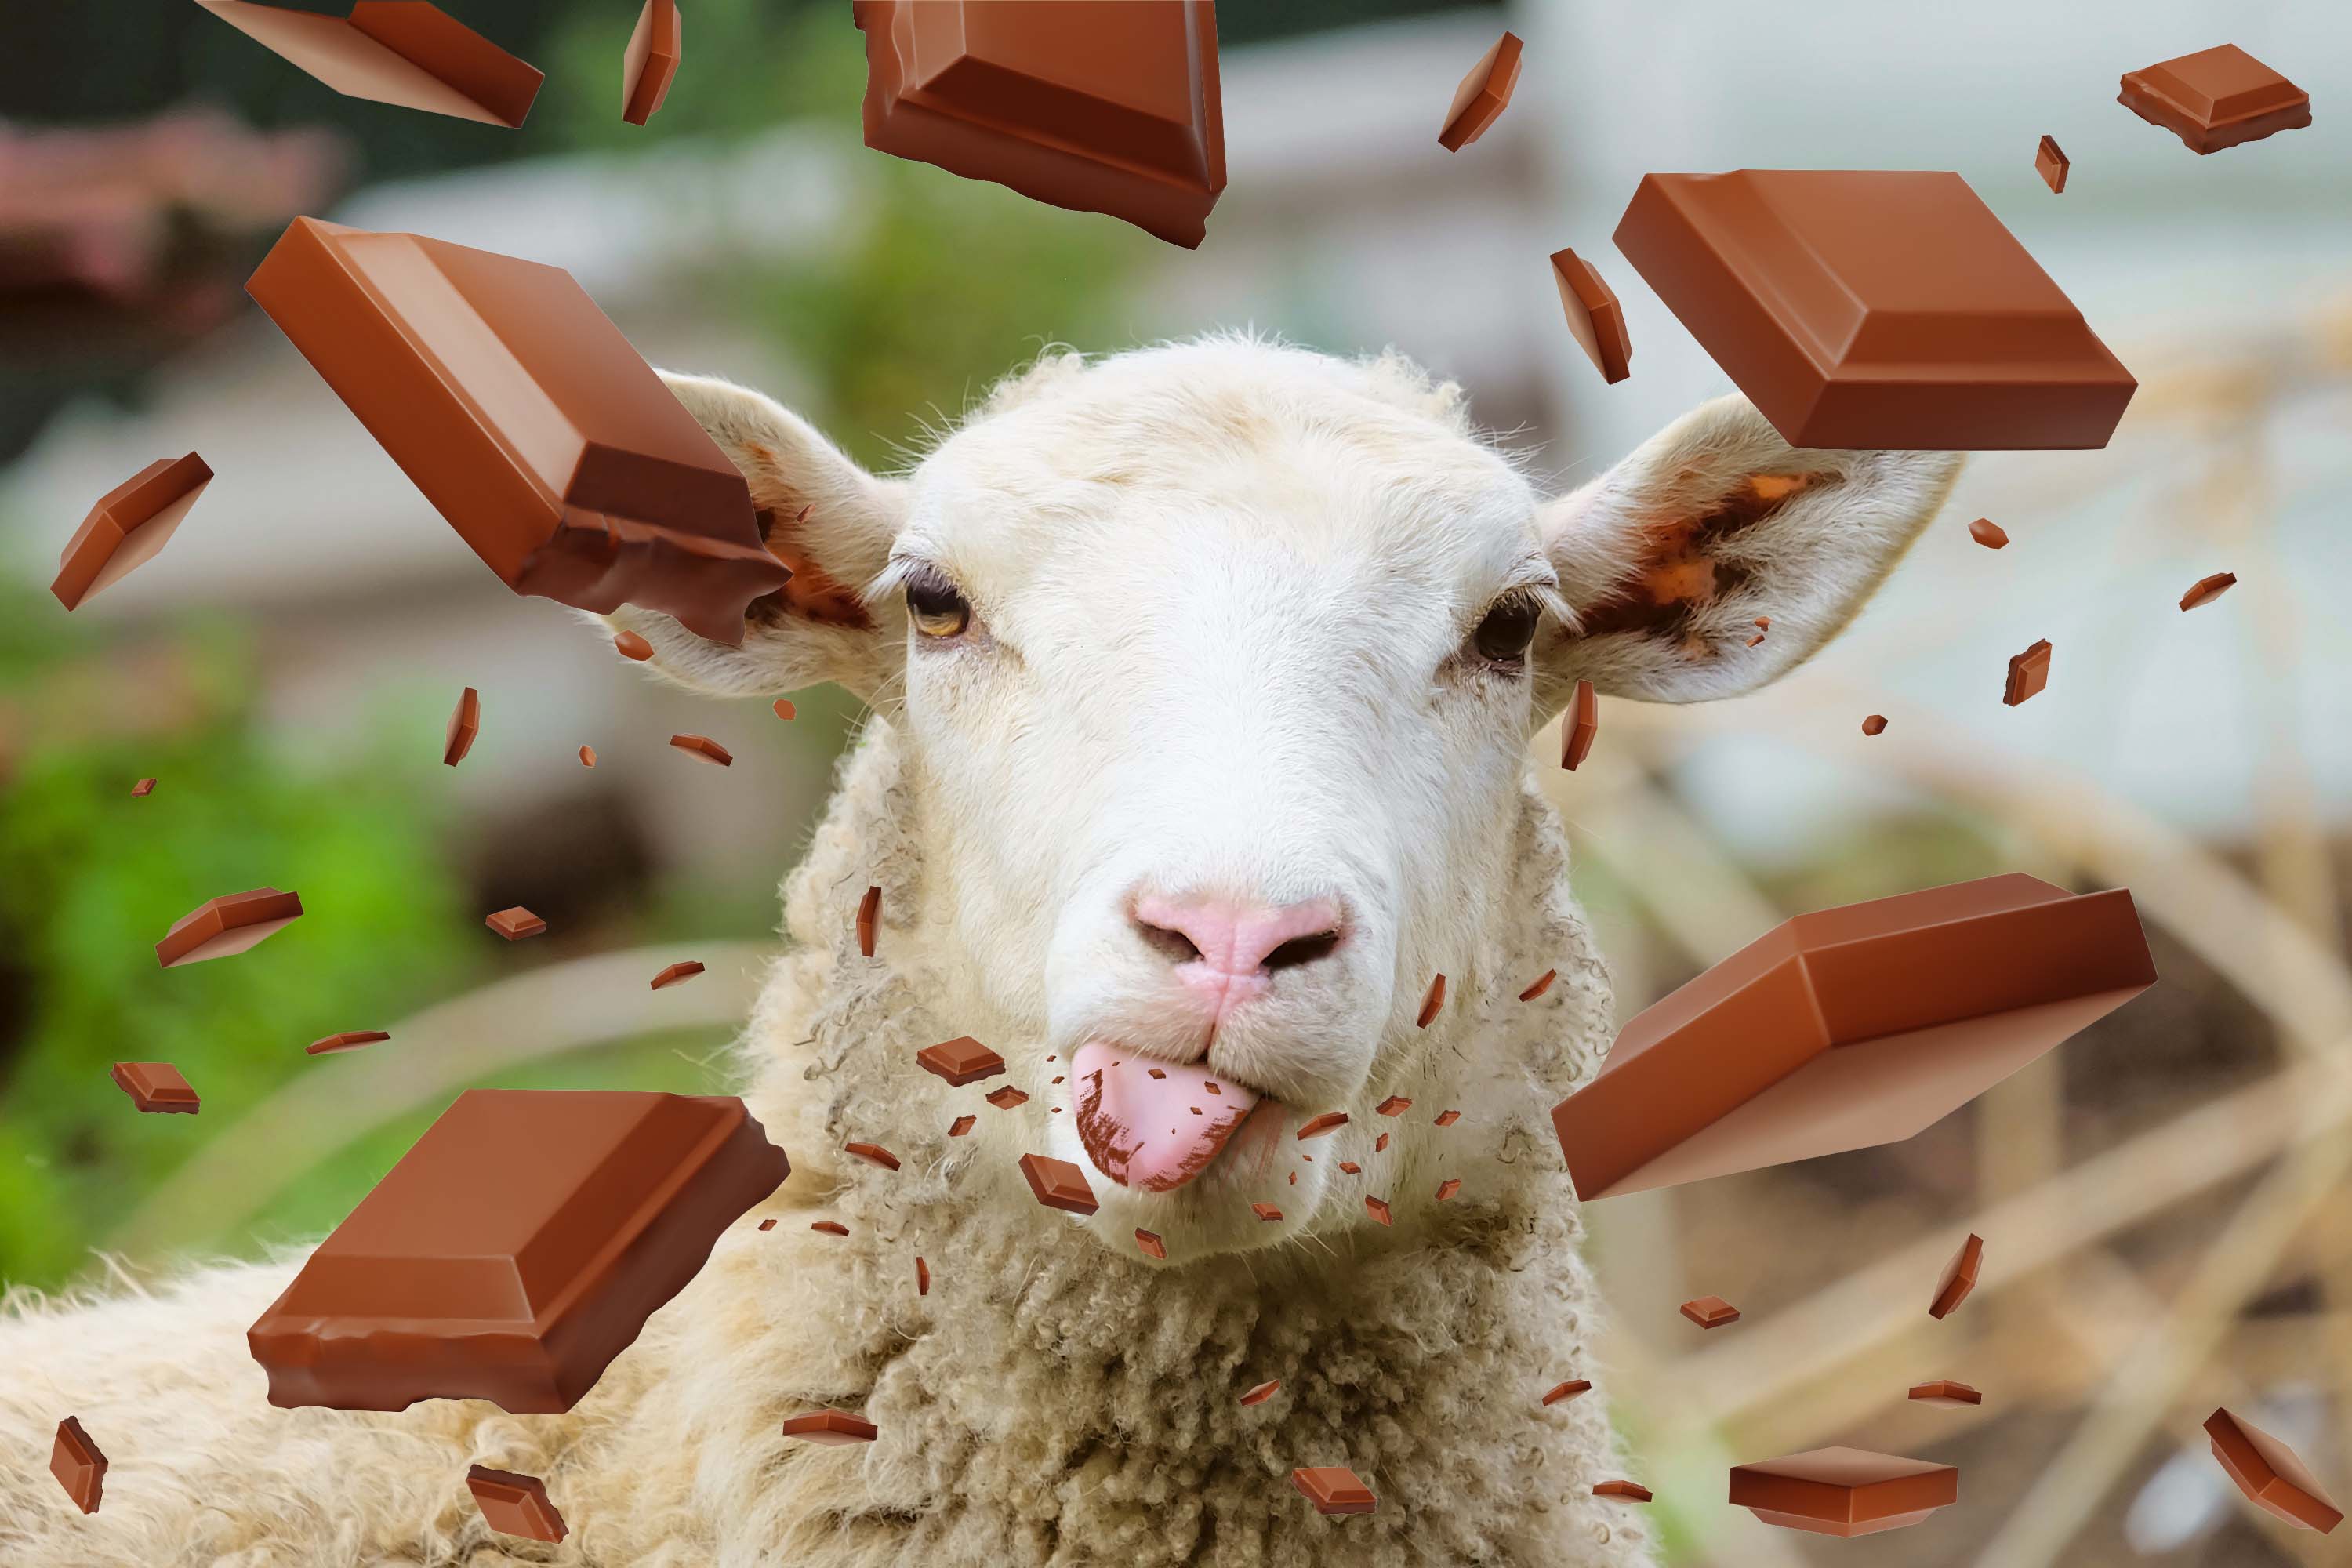 sheep with chocolate